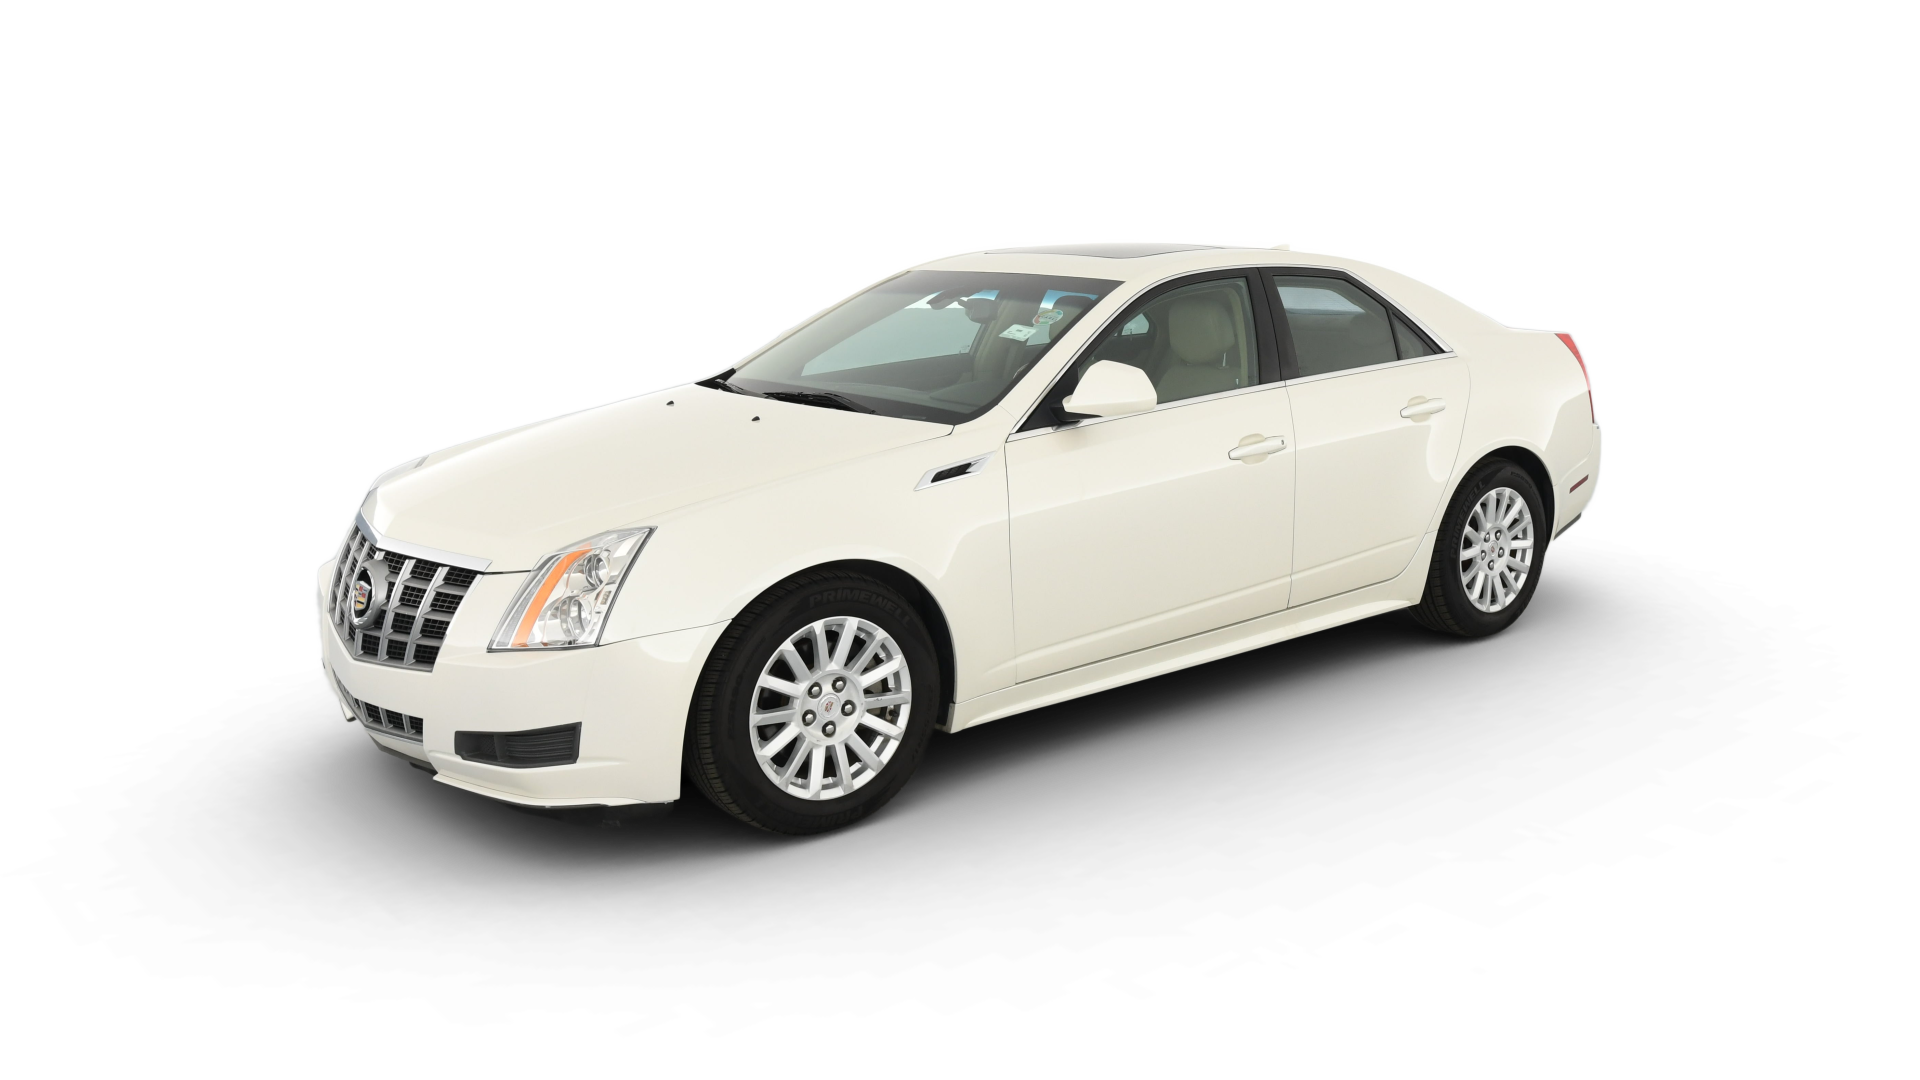 Cadillac CTS model image.